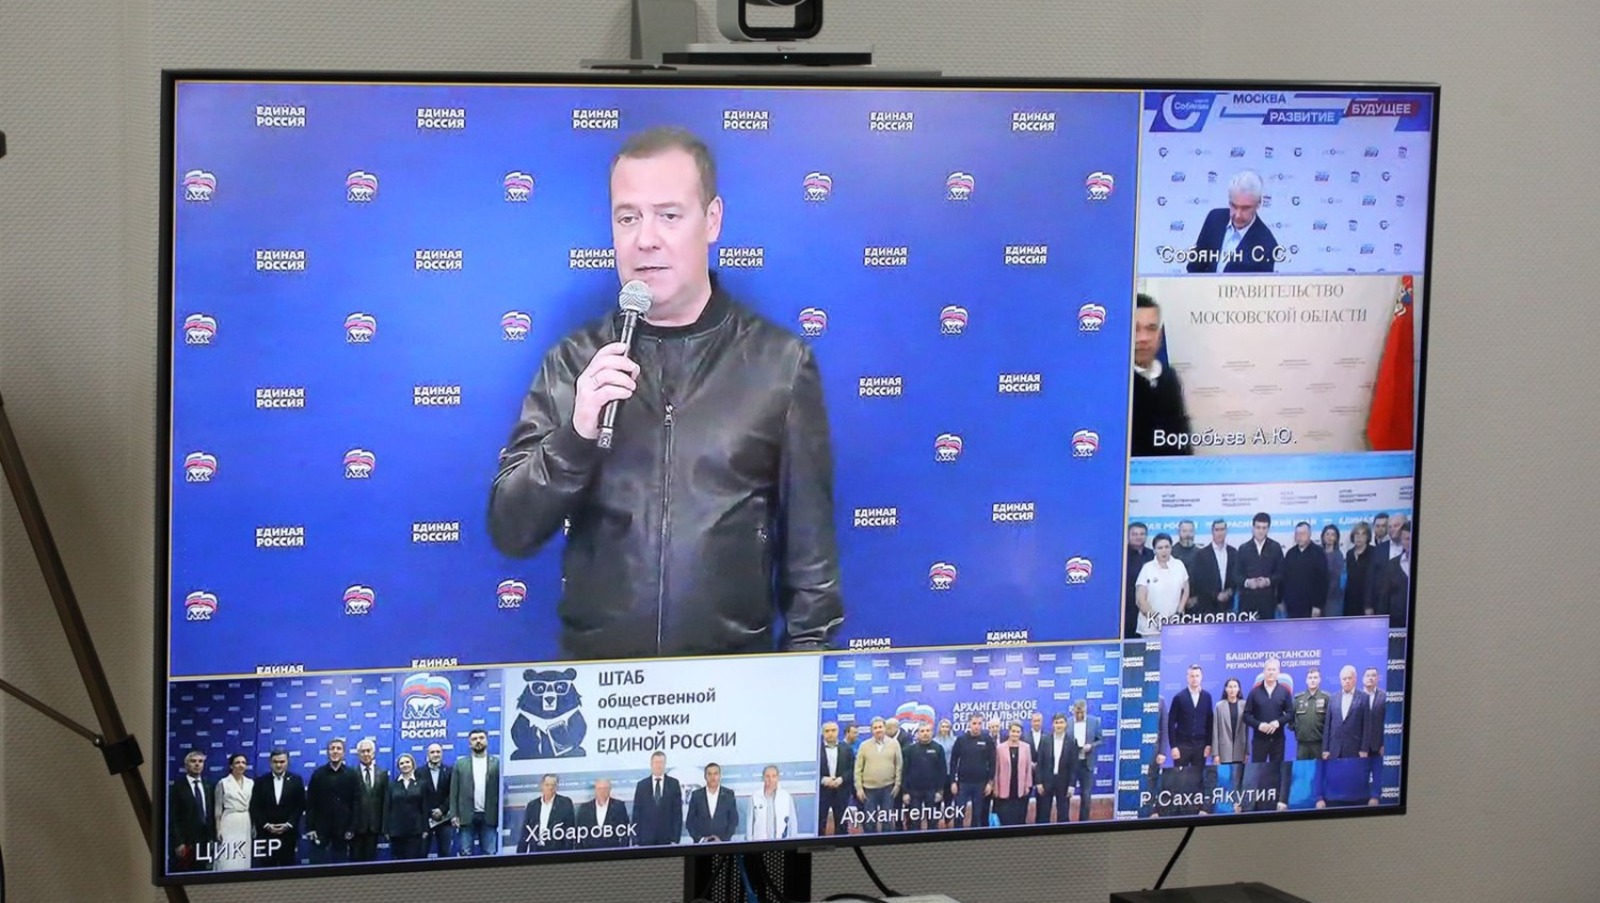 Дмитрий Медведев отметил хорошие результаты на выборах в Башкирии